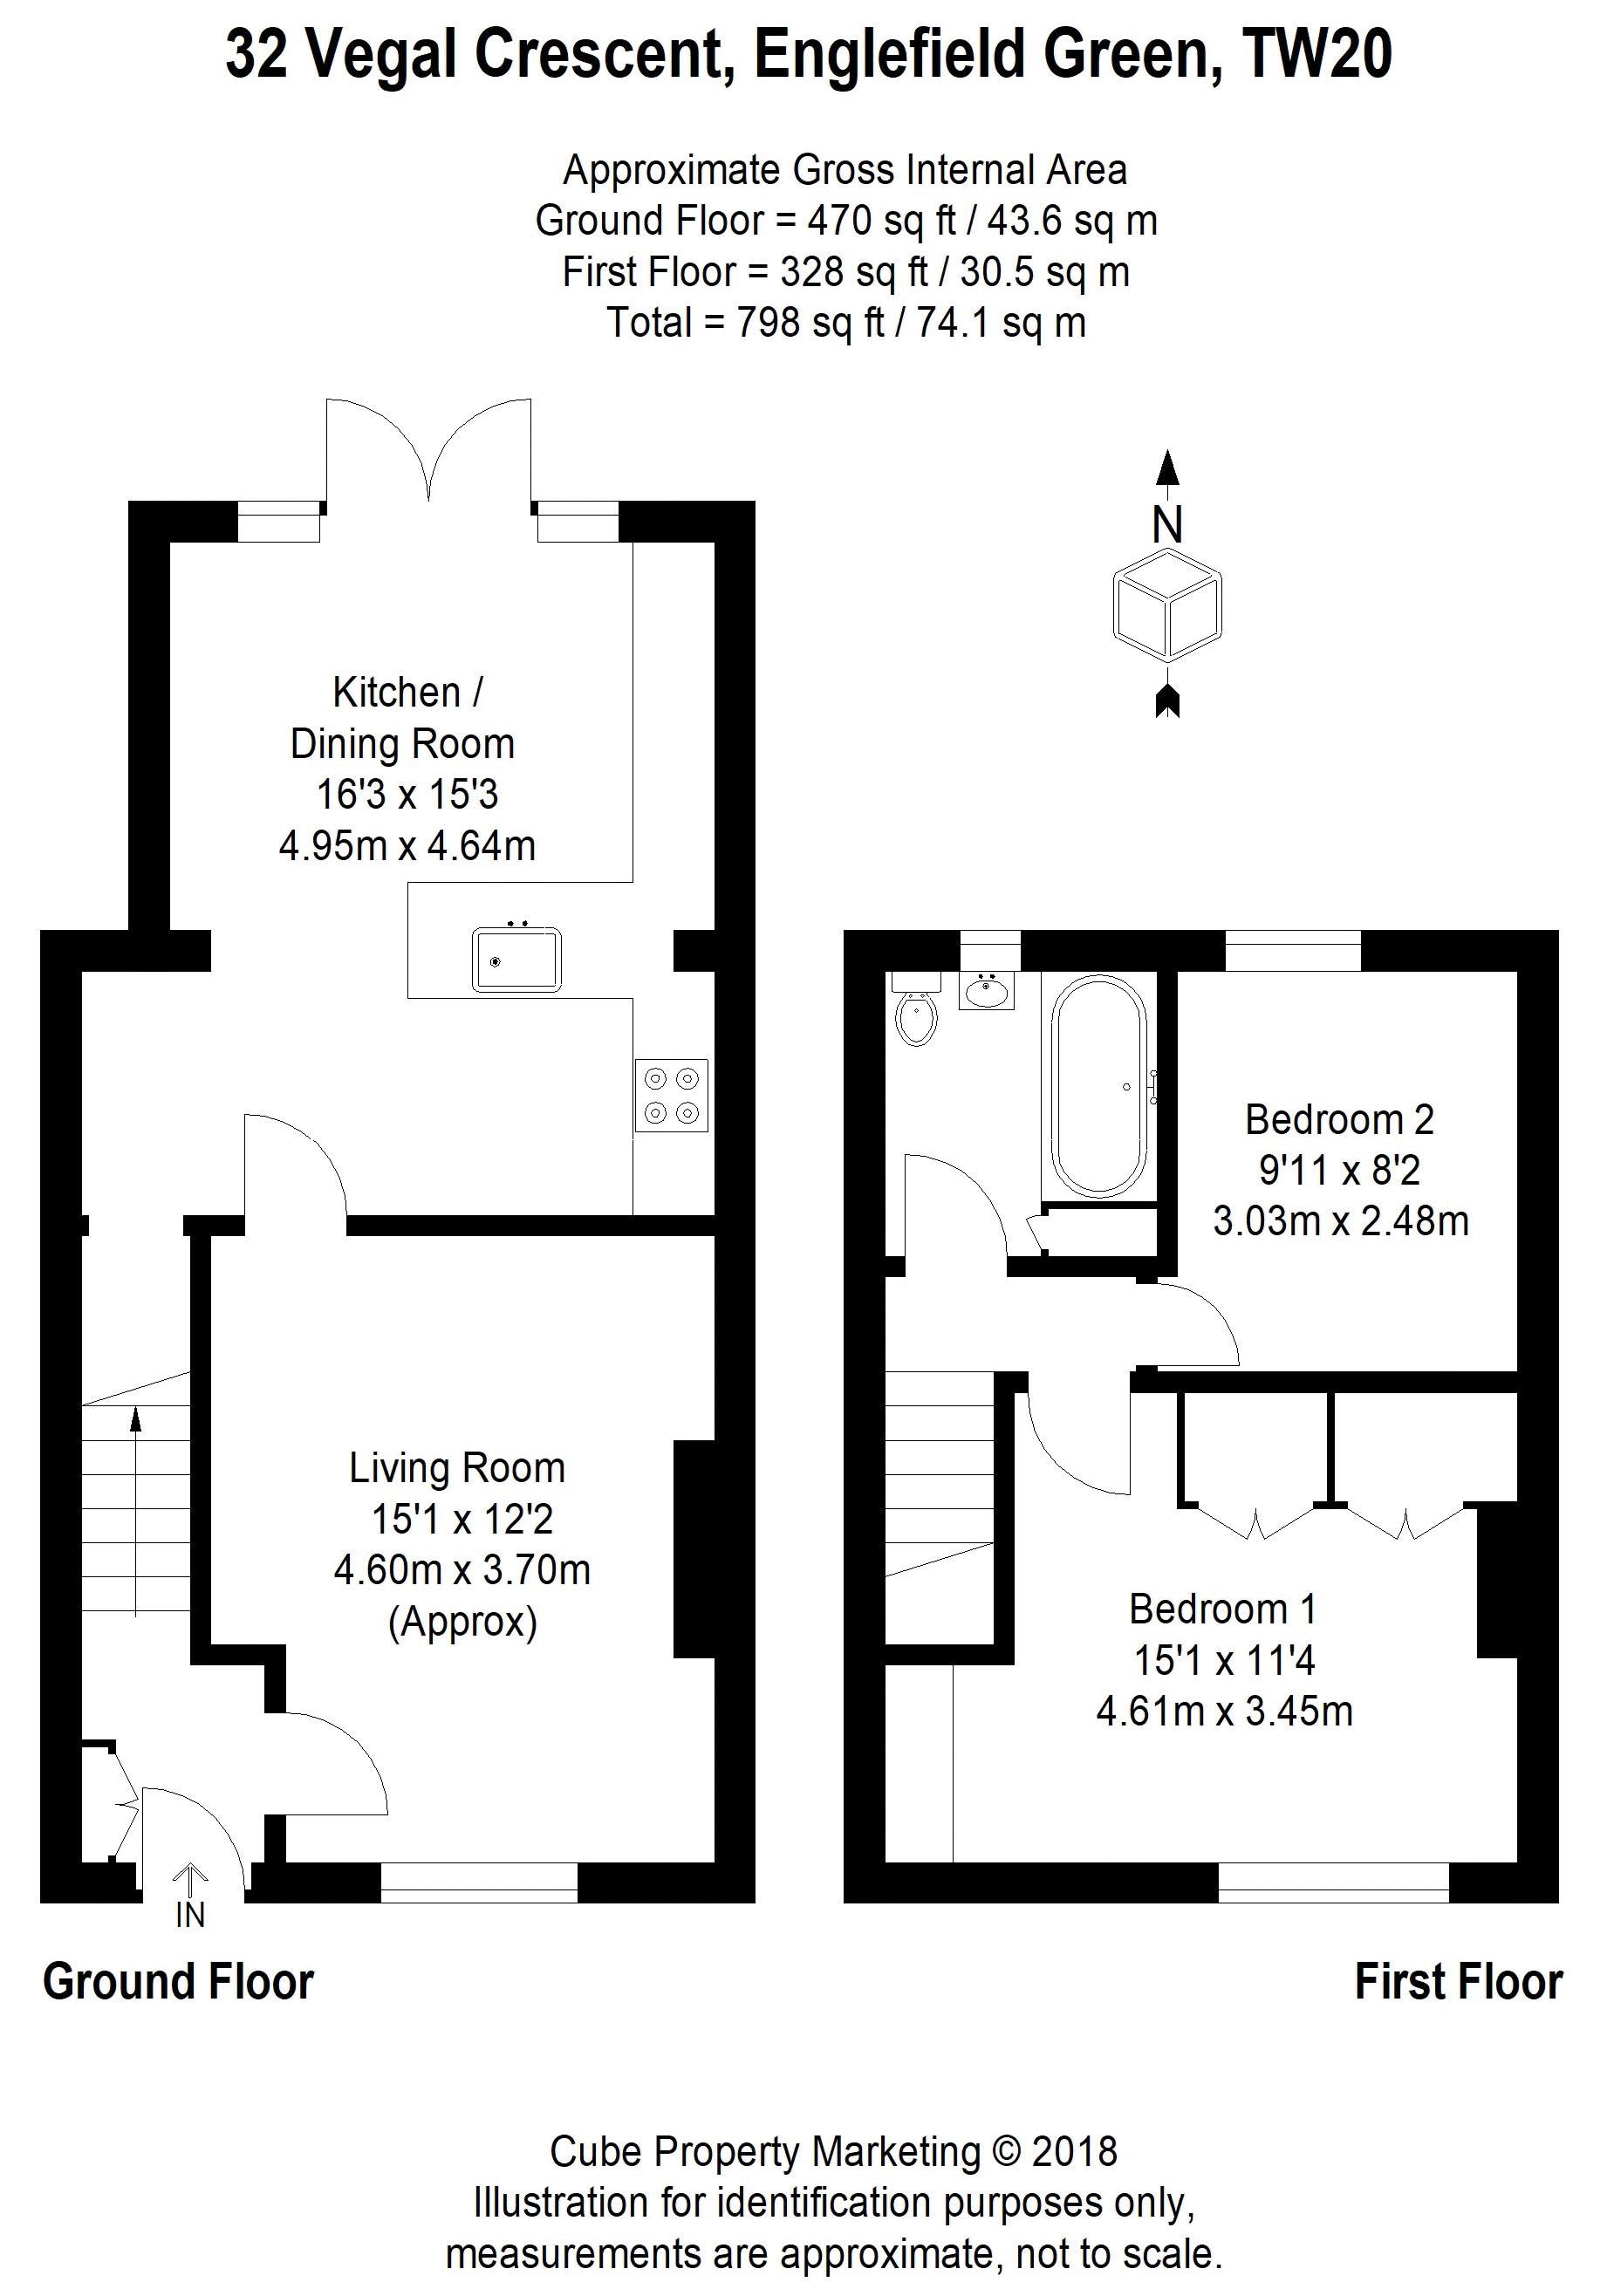 2 Bedrooms  to rent in Vegal Crescent, Englefield Green, Egham TW20